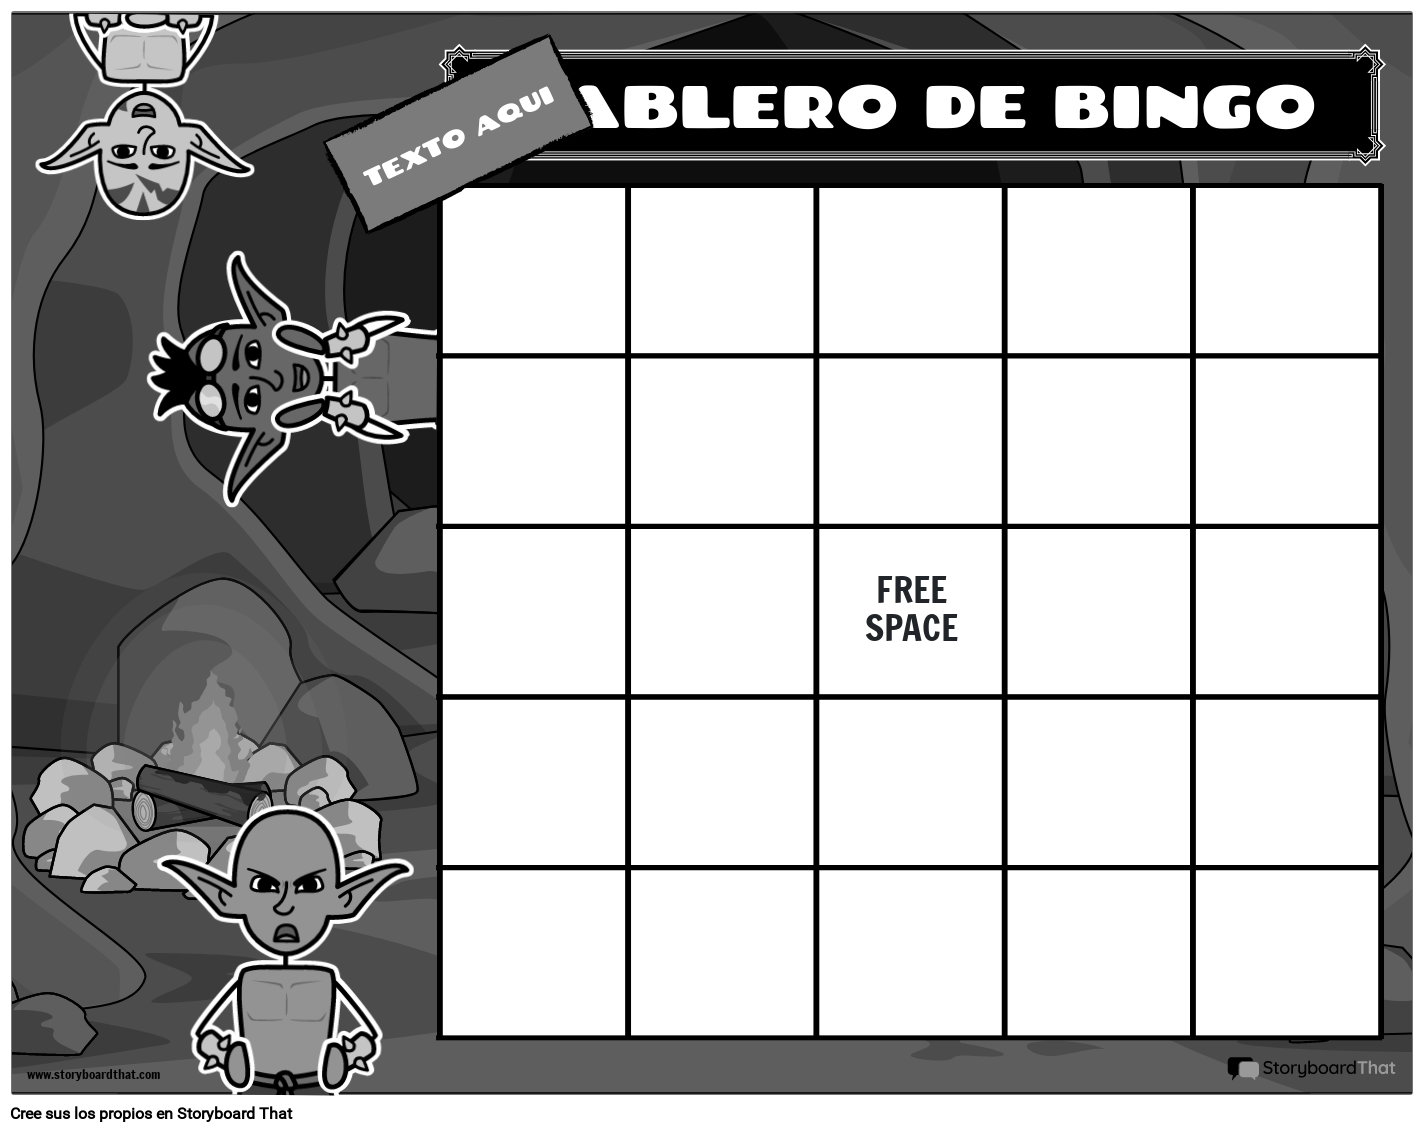 pronto Activamente recibir Plantilla de Cartones de Bingo — Hacer Cartones de Bingo | StoryboardThat